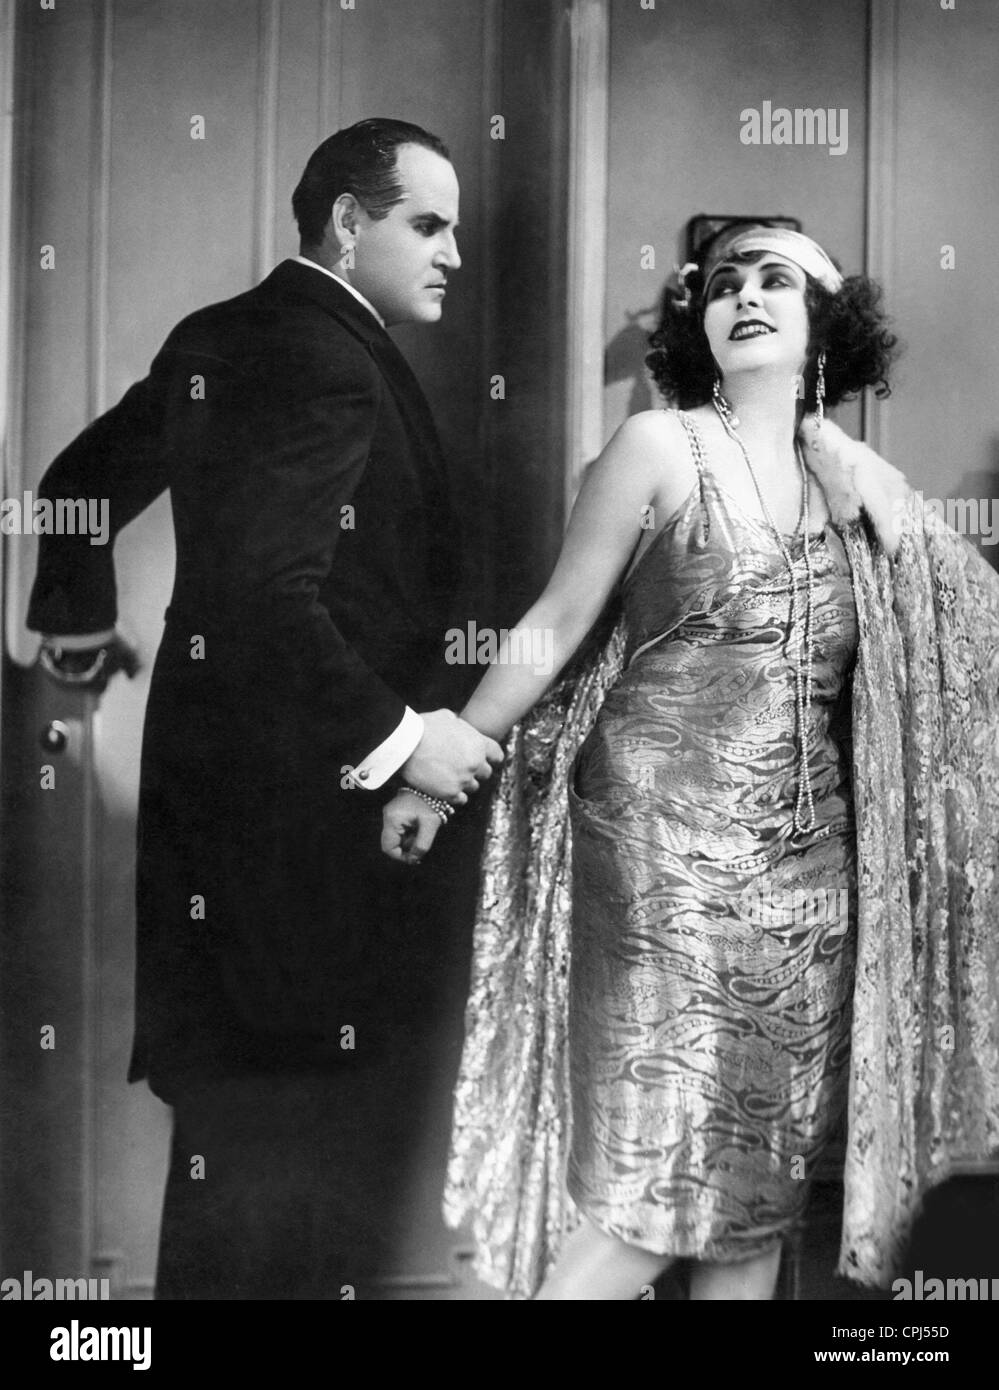 Hans Adalbert Schlettow und Ruth Weyher in 'Die Flammen luegen' (informal title: The Flames Lie), 1926 Stock Photo